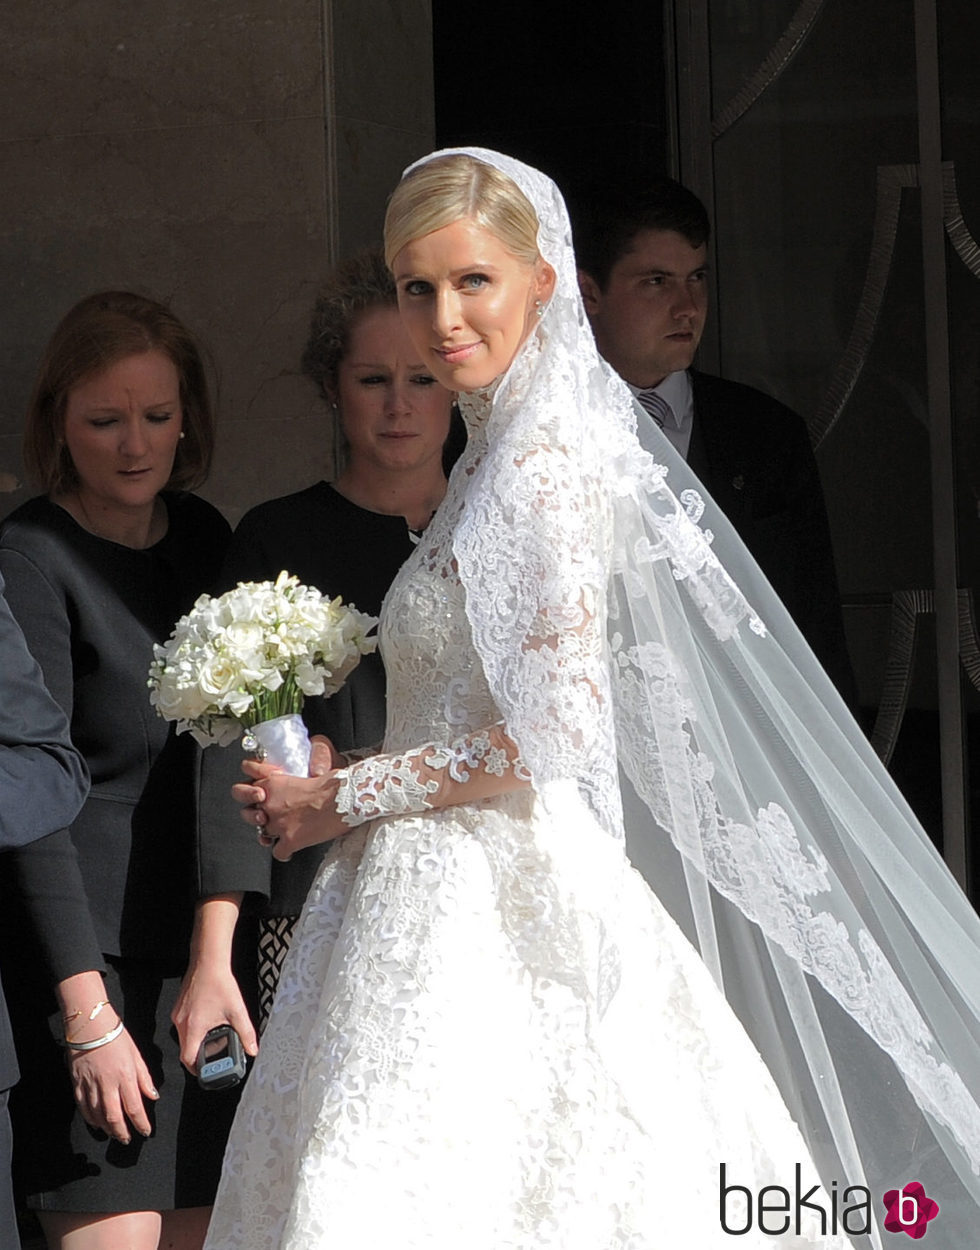 Nicky Hilton radiante en el día de su boda con James Rothschild